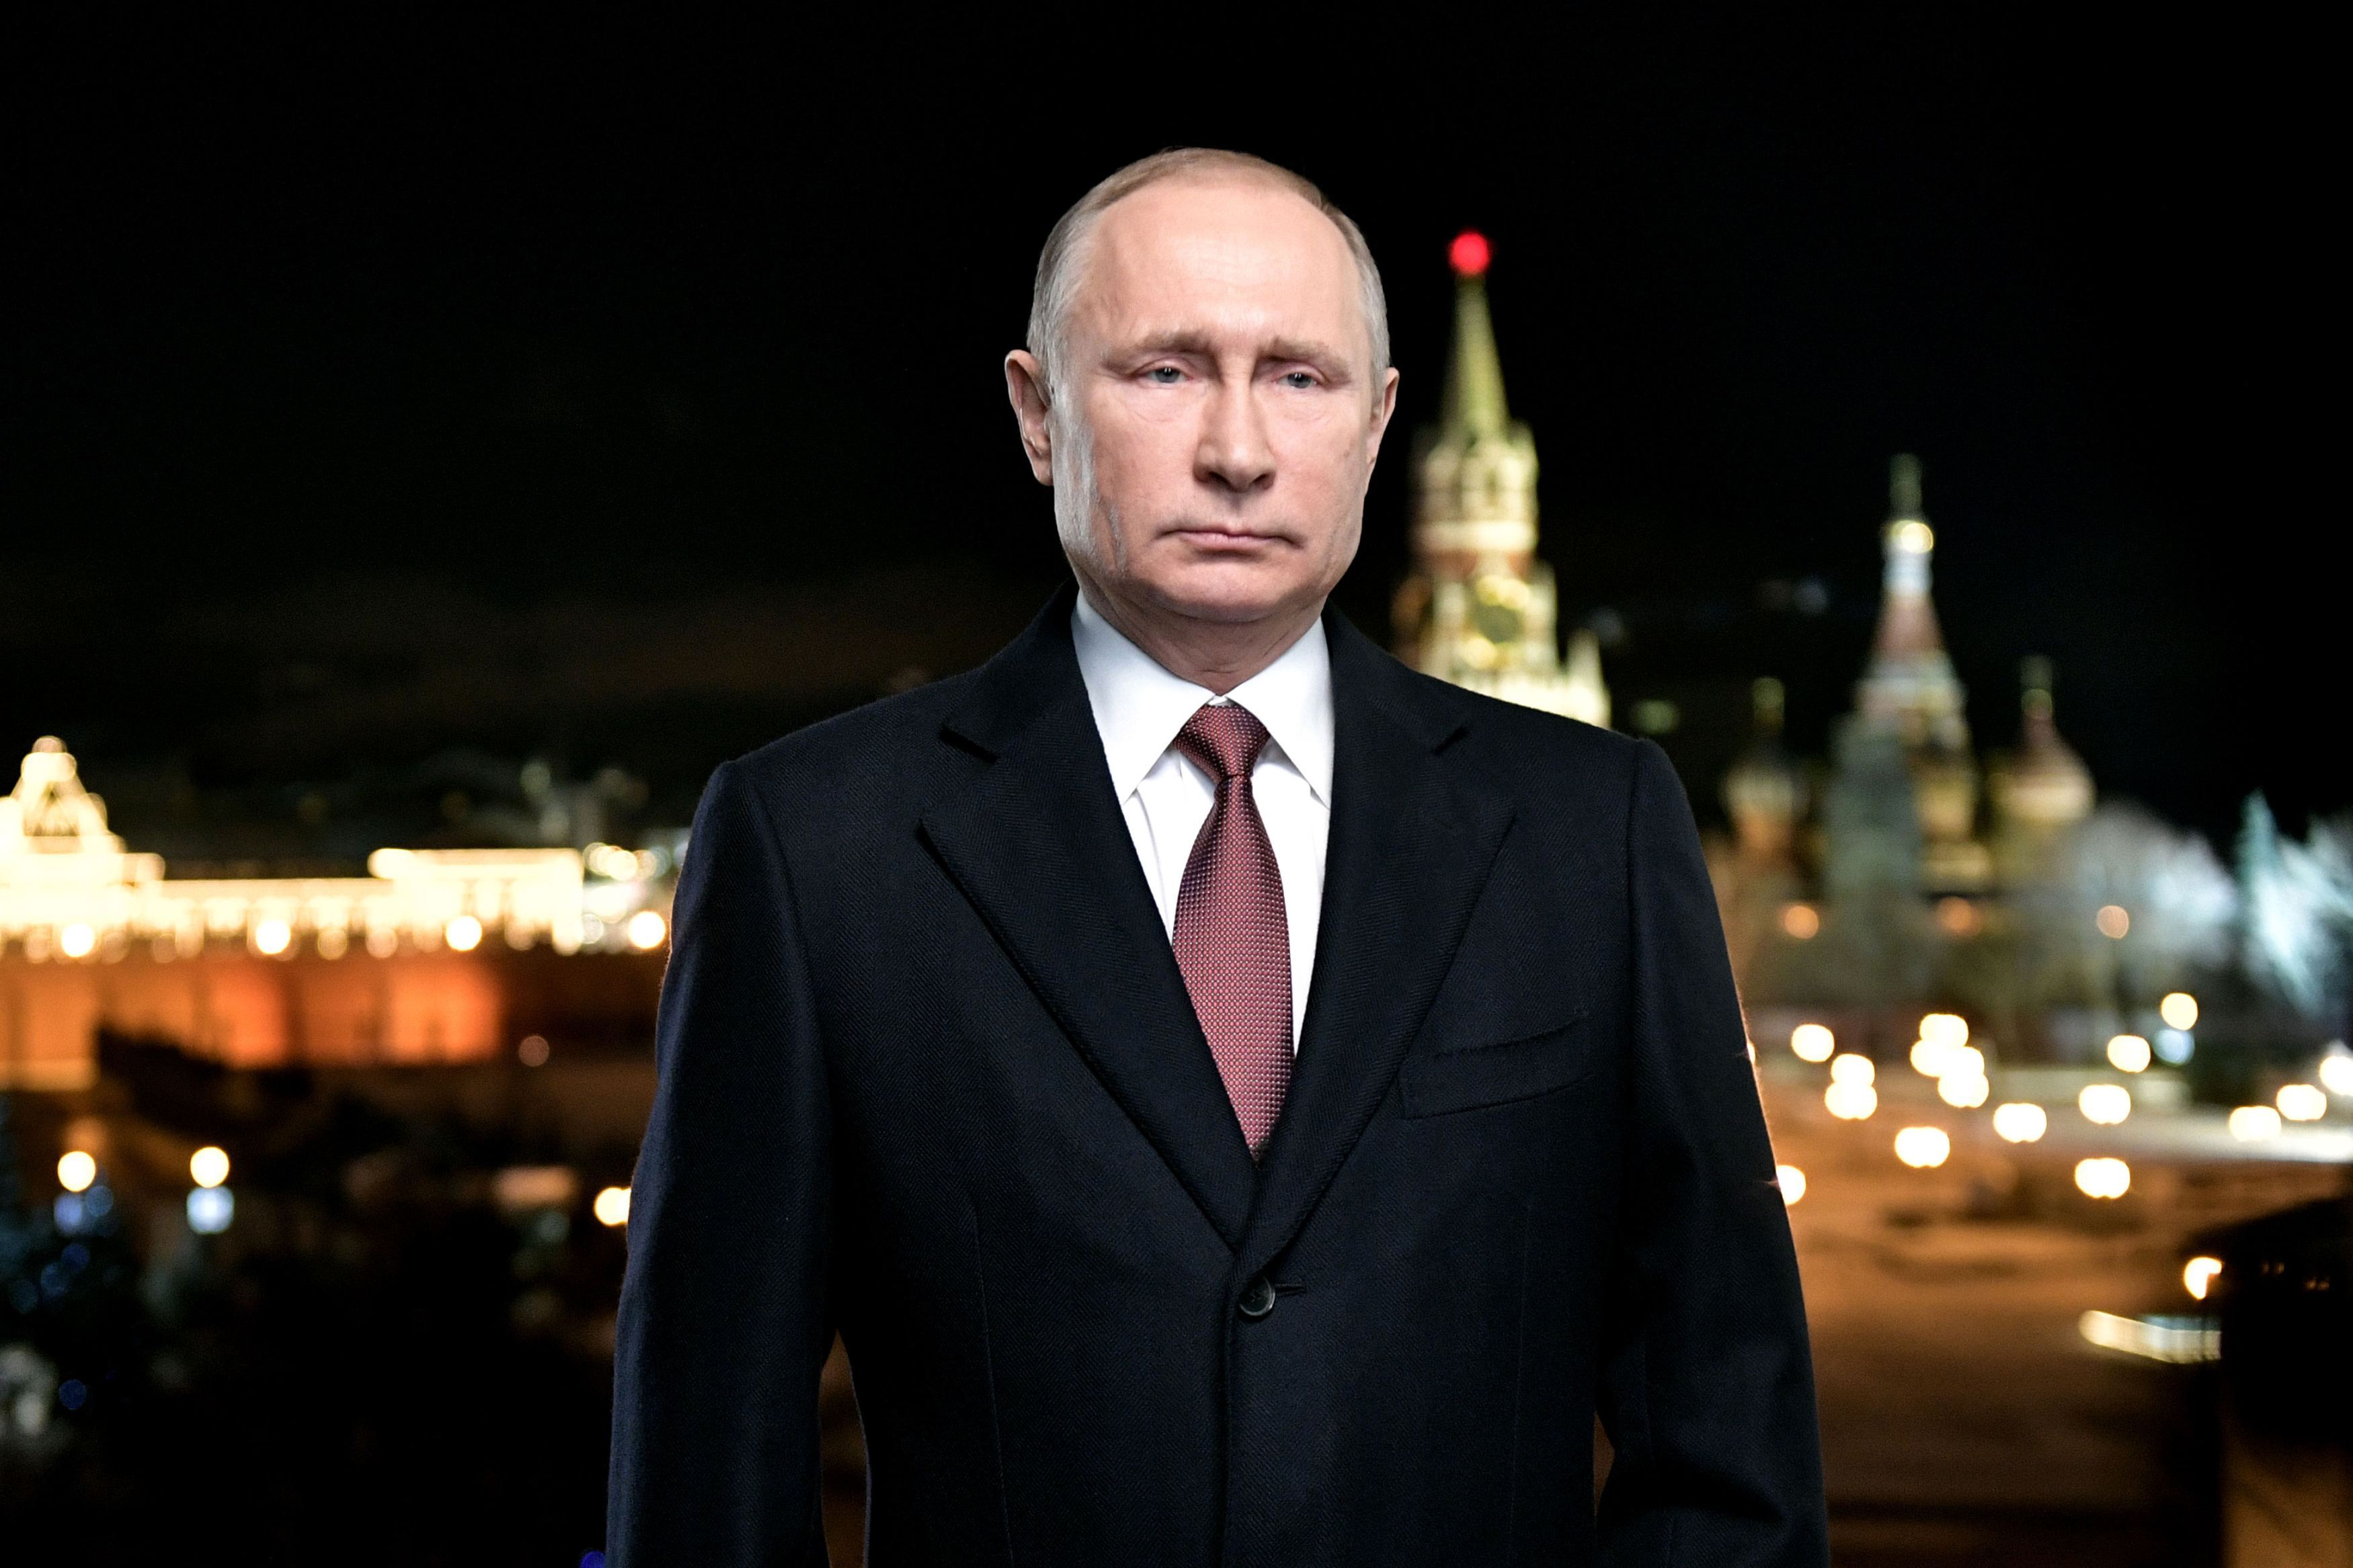 Vladimir Putin: Neglijenţa criminală şi nepăsarea sunt cauzele incendiului din Kemerovo